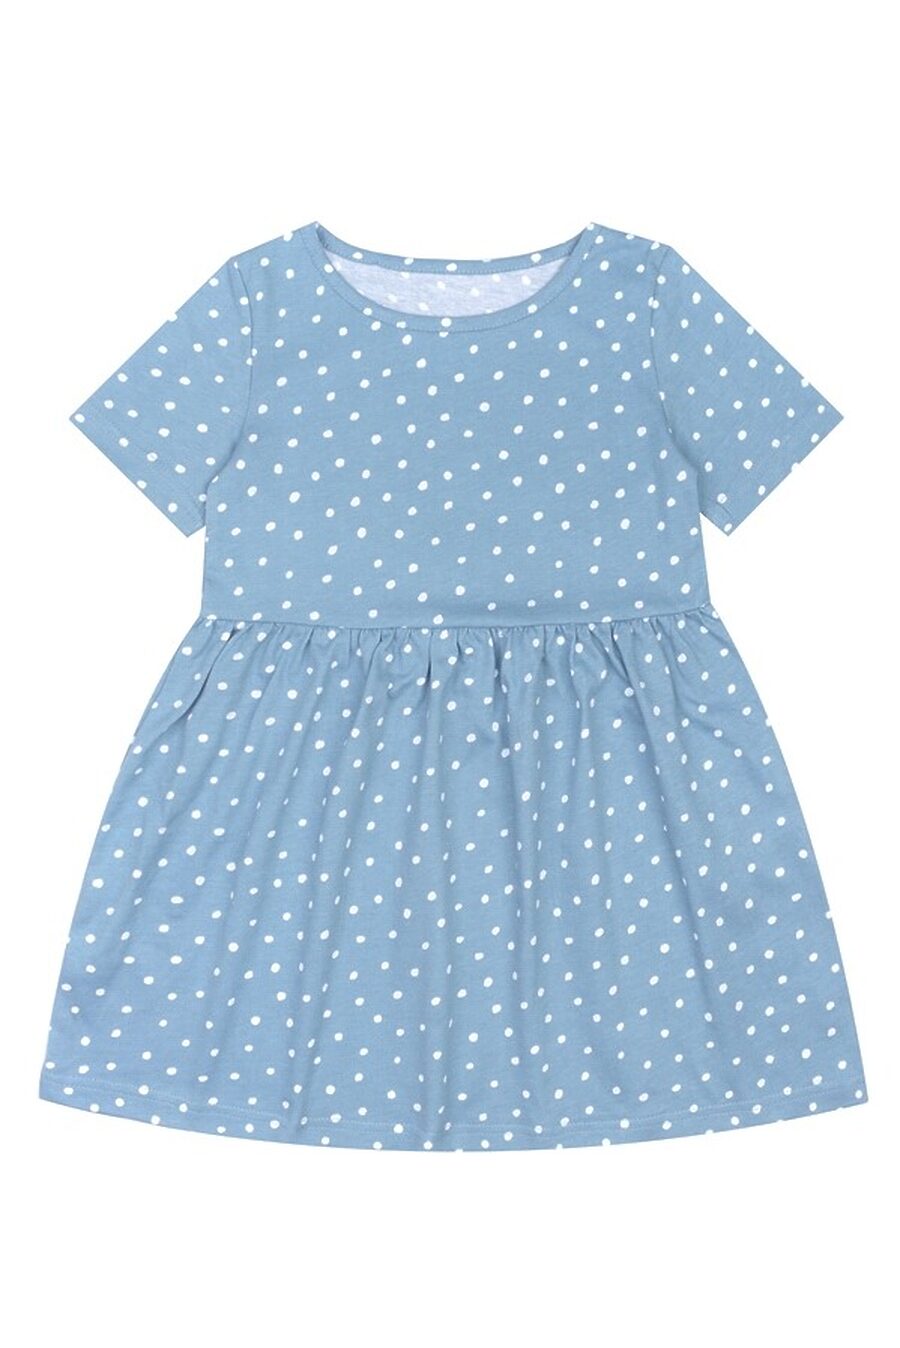 Платье для девочек АПРЕЛЬ 785465 купить оптом от производителя. Совместная покупка детской одежды в OptMoyo